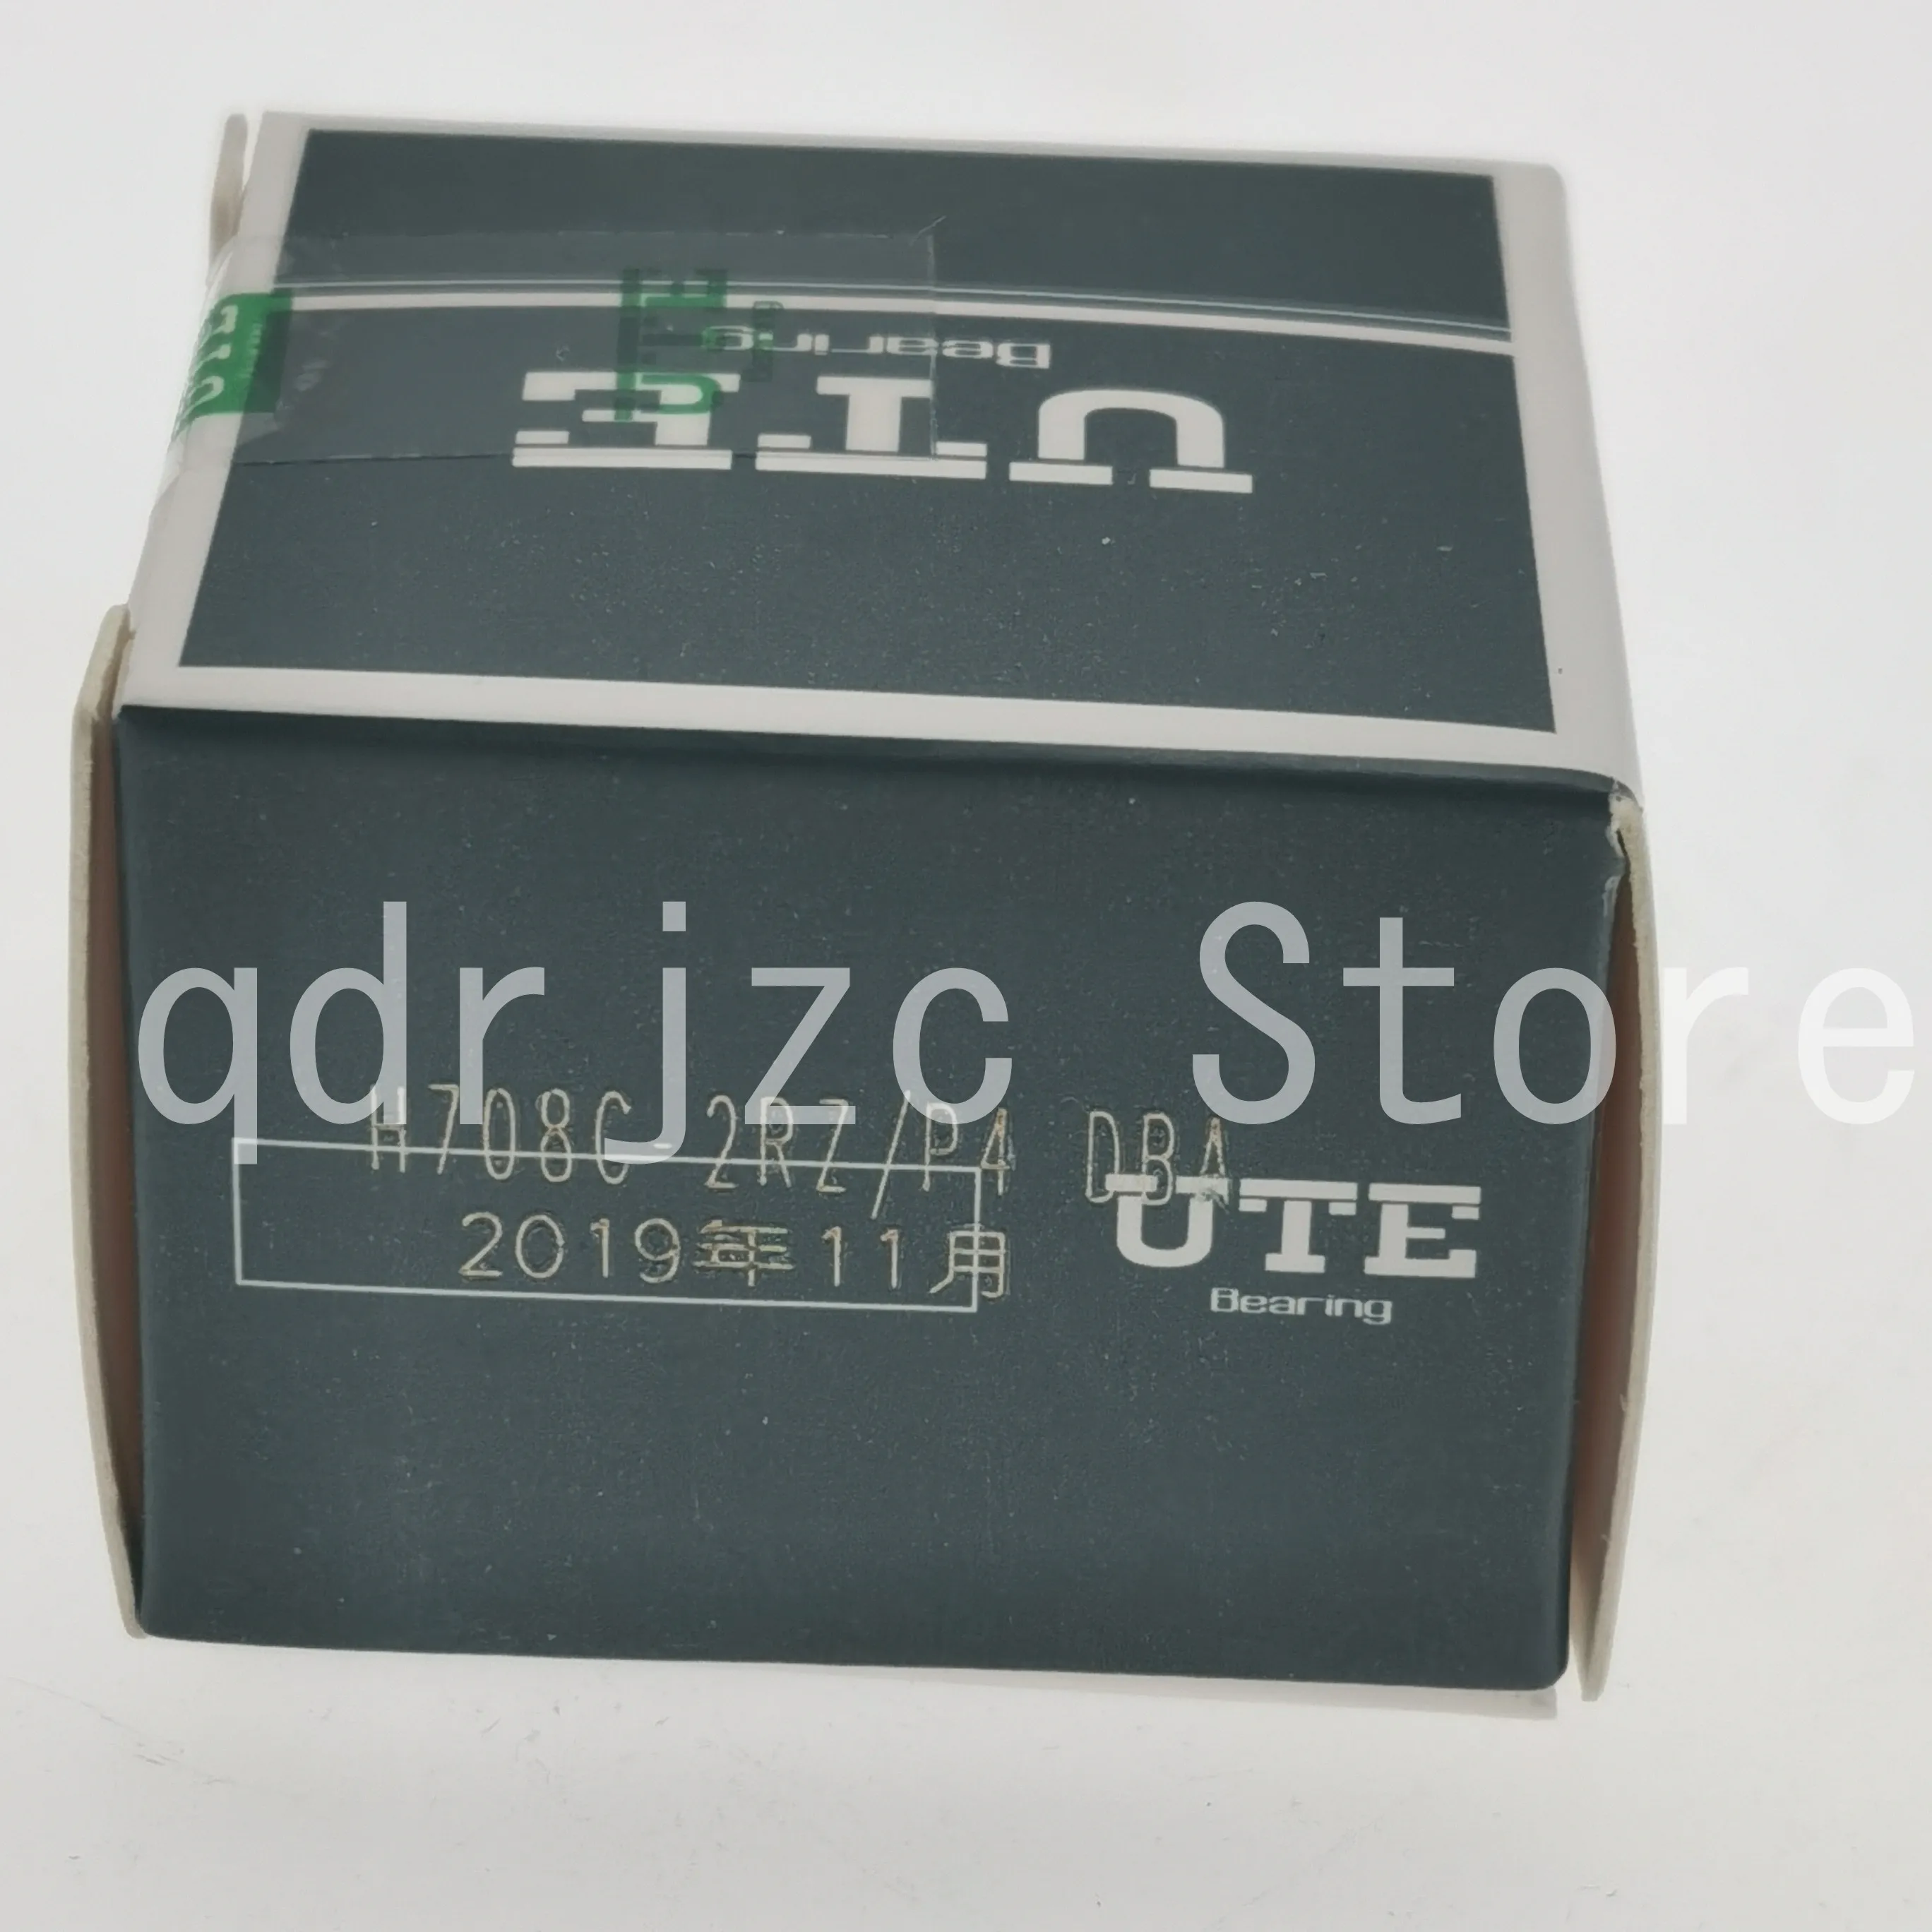 UTE Minyatür Eğik Bilyalı Rulmanlar H708C-2RZ / P4-DBA = S708CE / P4ADBA yan mühürlü arka arkaya montaj